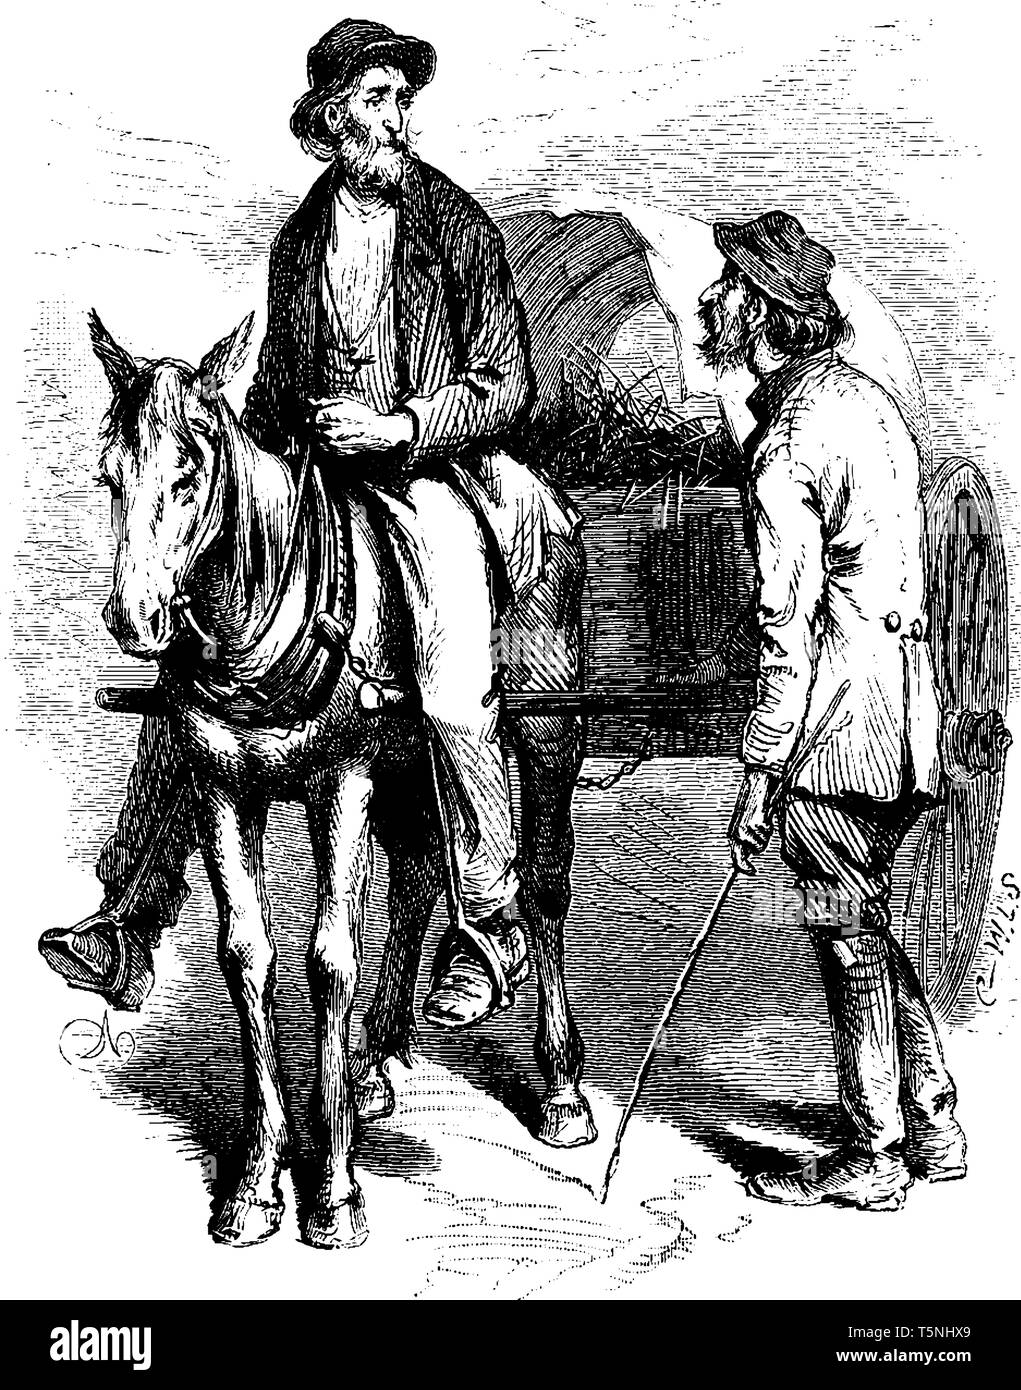 Un homme monté sur chariot à parler avec un autre homme, debout près de lui, vintage dessin ou gravure illustration Illustration de Vecteur